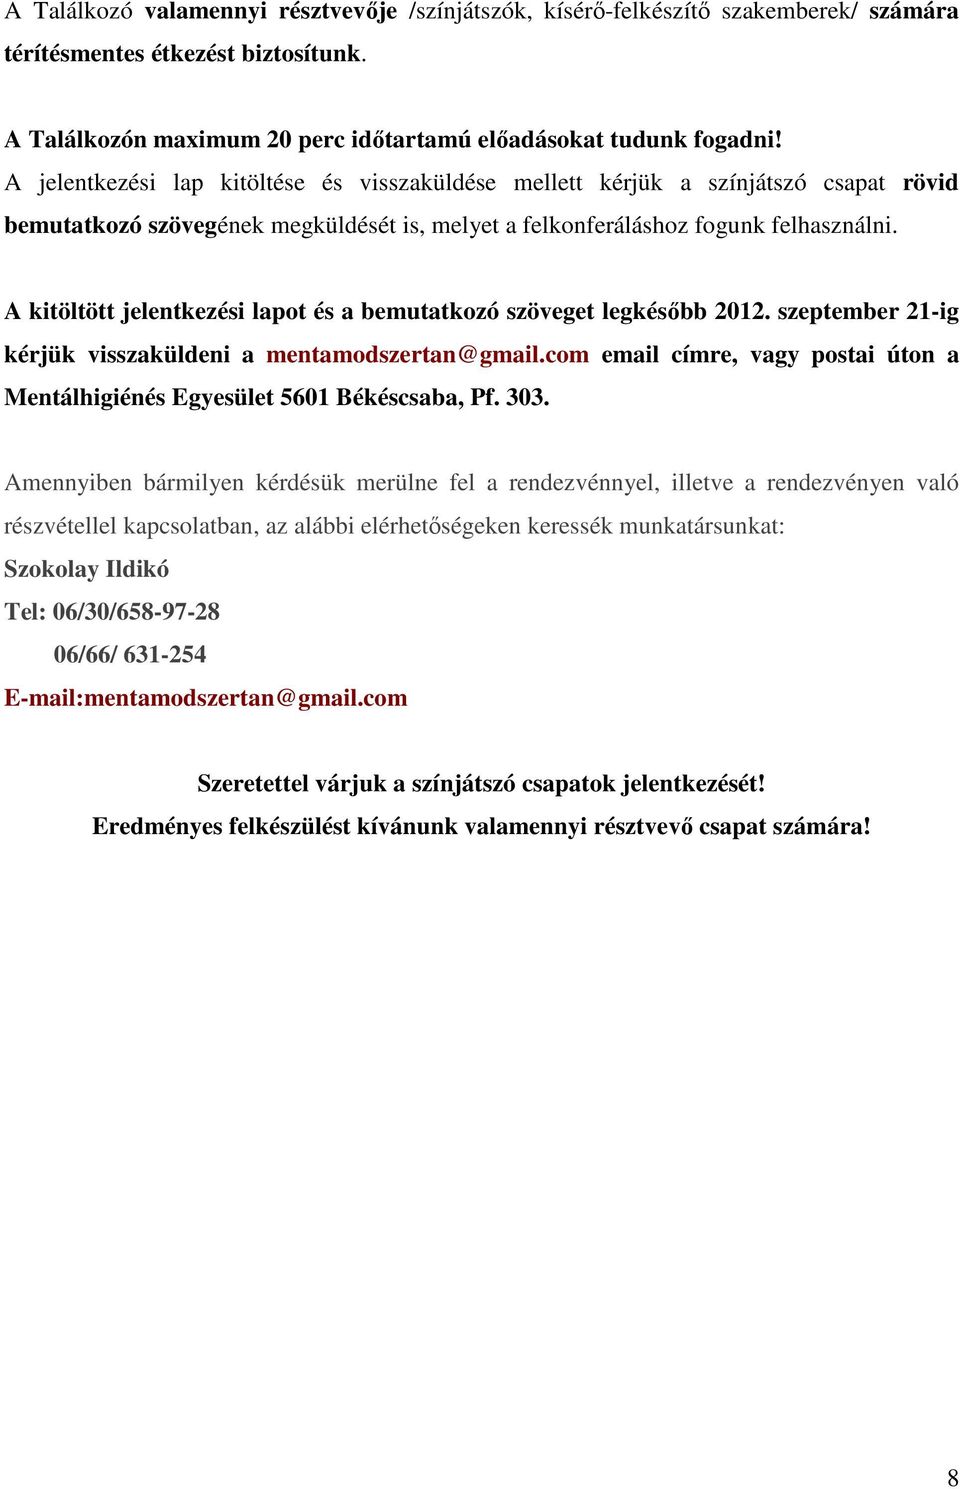 A kitöltött jelentkezési lapot és a bemutatkozó szöveget legkésőbb 2012. szeptember 21-ig kérjük visszaküldeni a mentamodszertan@gmail.